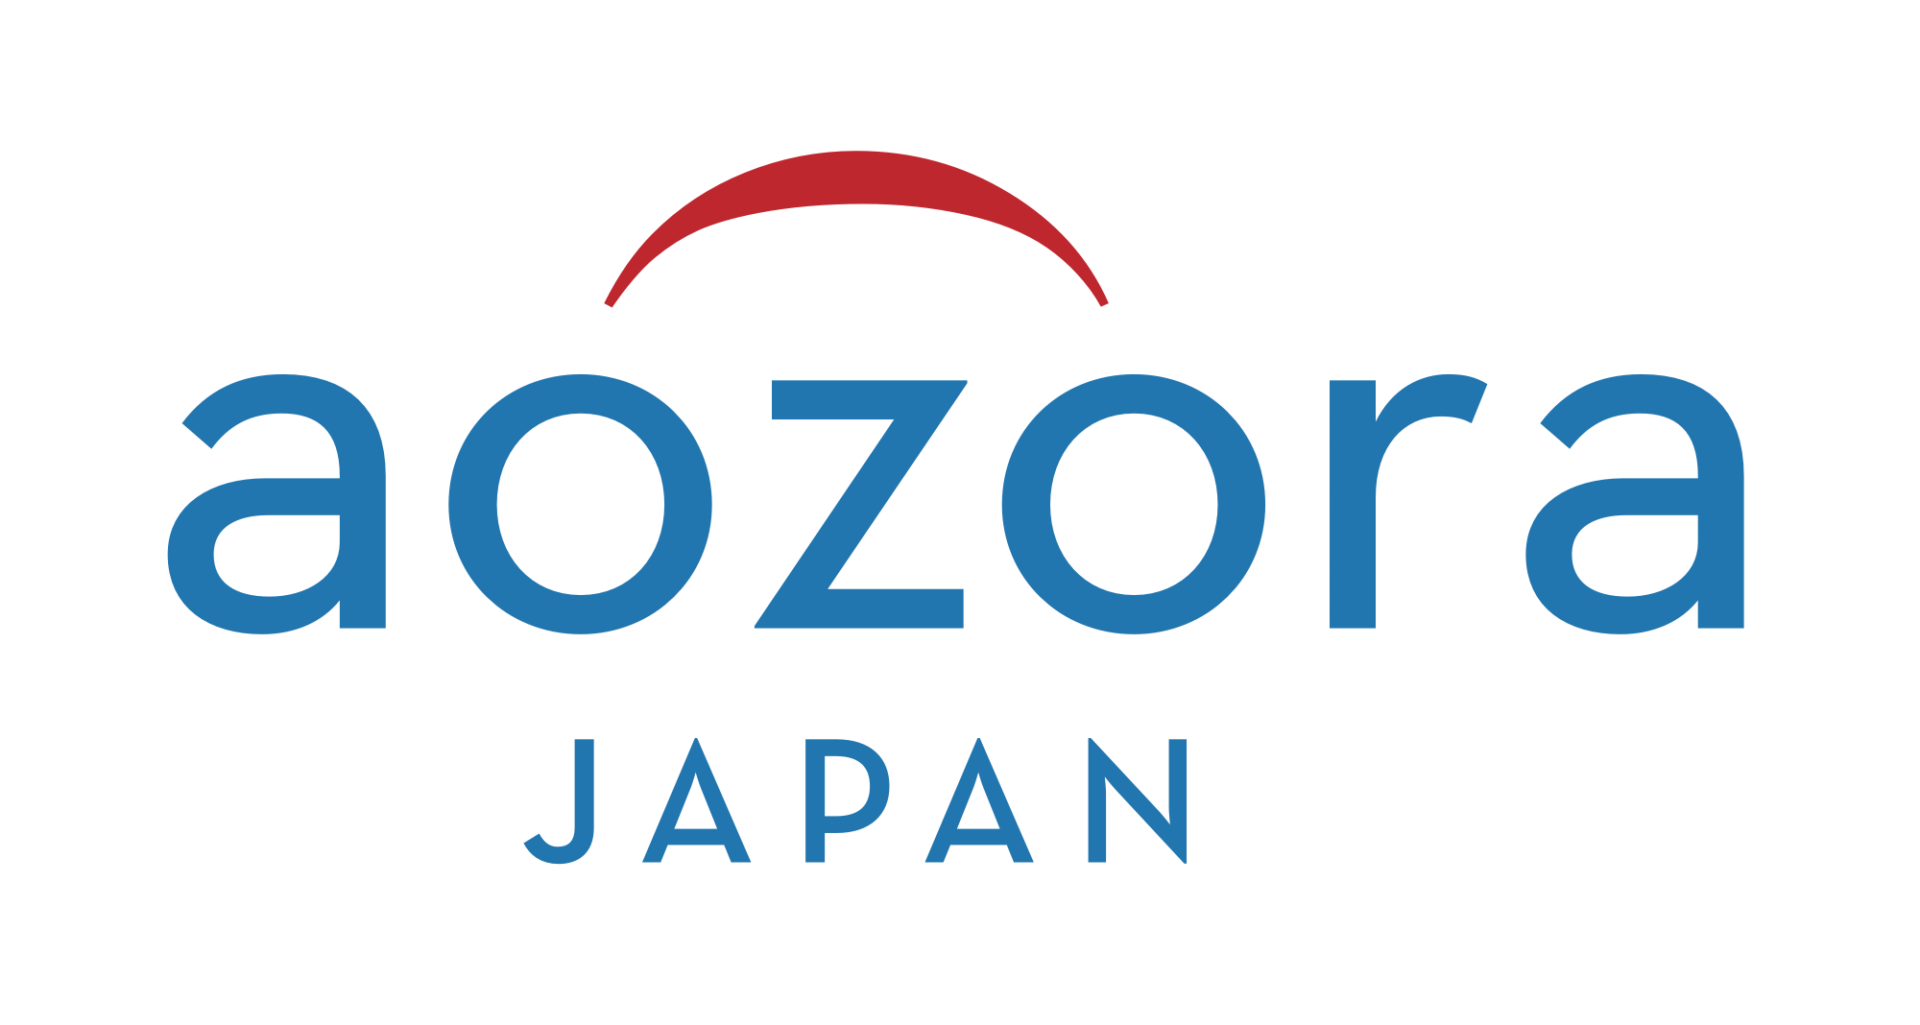 株式会社アオゾラ・ジャパン　Aozora Japan Ltd.